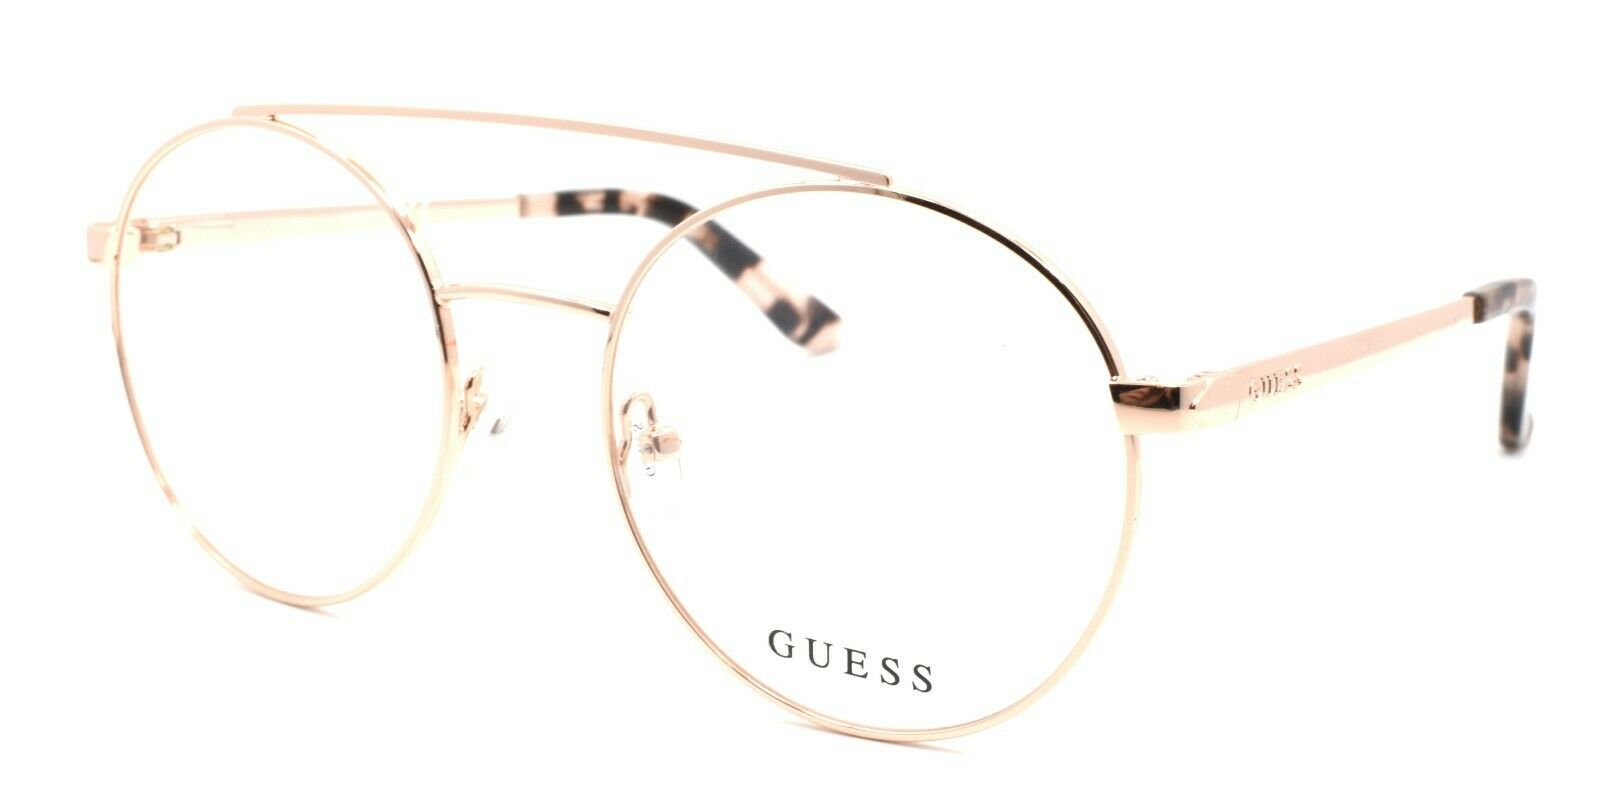 1-GUESS GU2714 032 Women's Eyeglasses Frames Aviator 52-18-135 Pale Gold-889214034113-IKSpecs